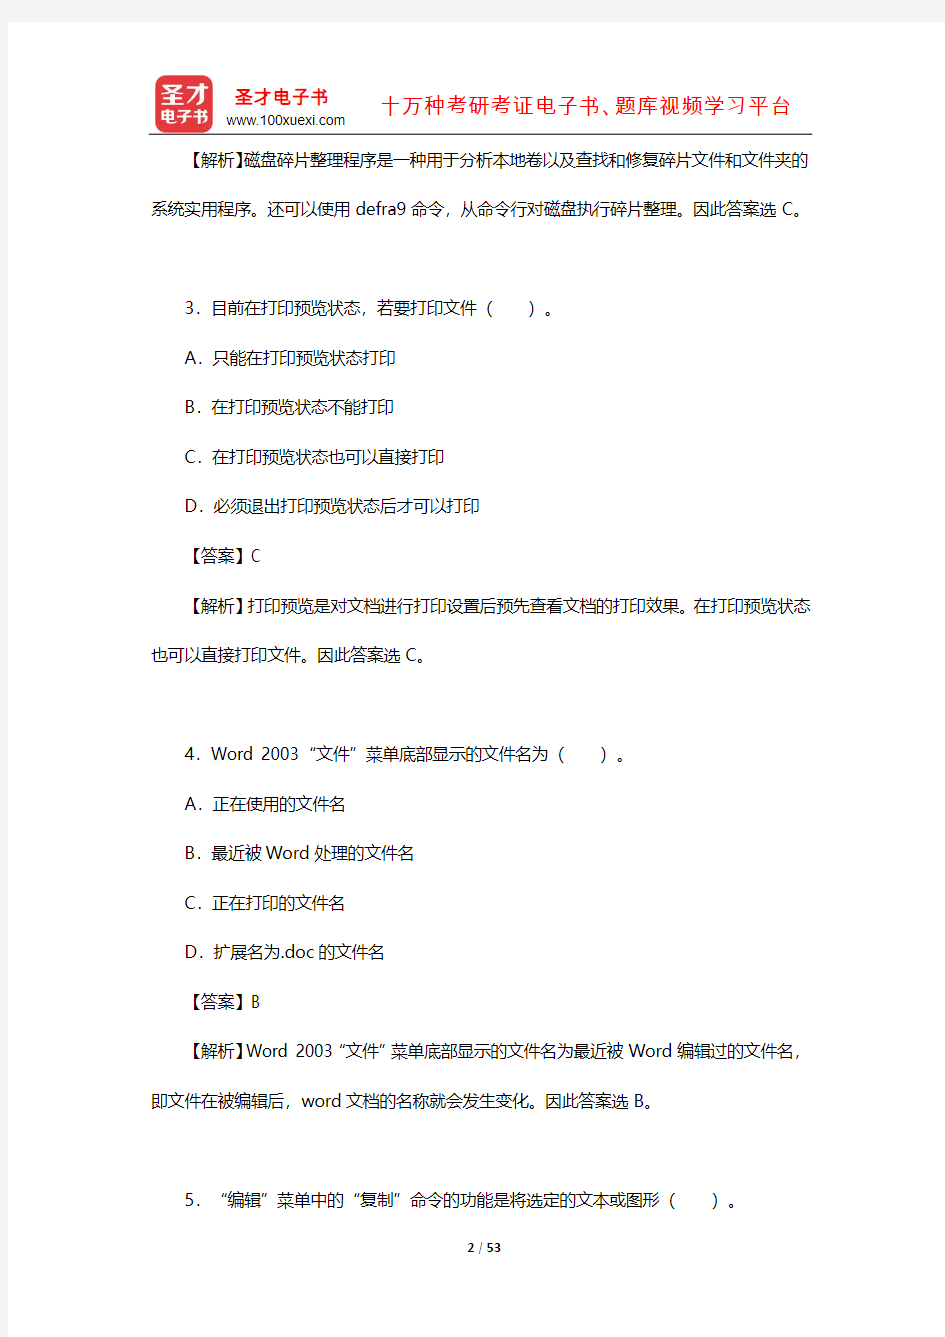 黑龙江省事业单位招聘考试《综合知识》章节题库(计算机知识)【圣才出品】